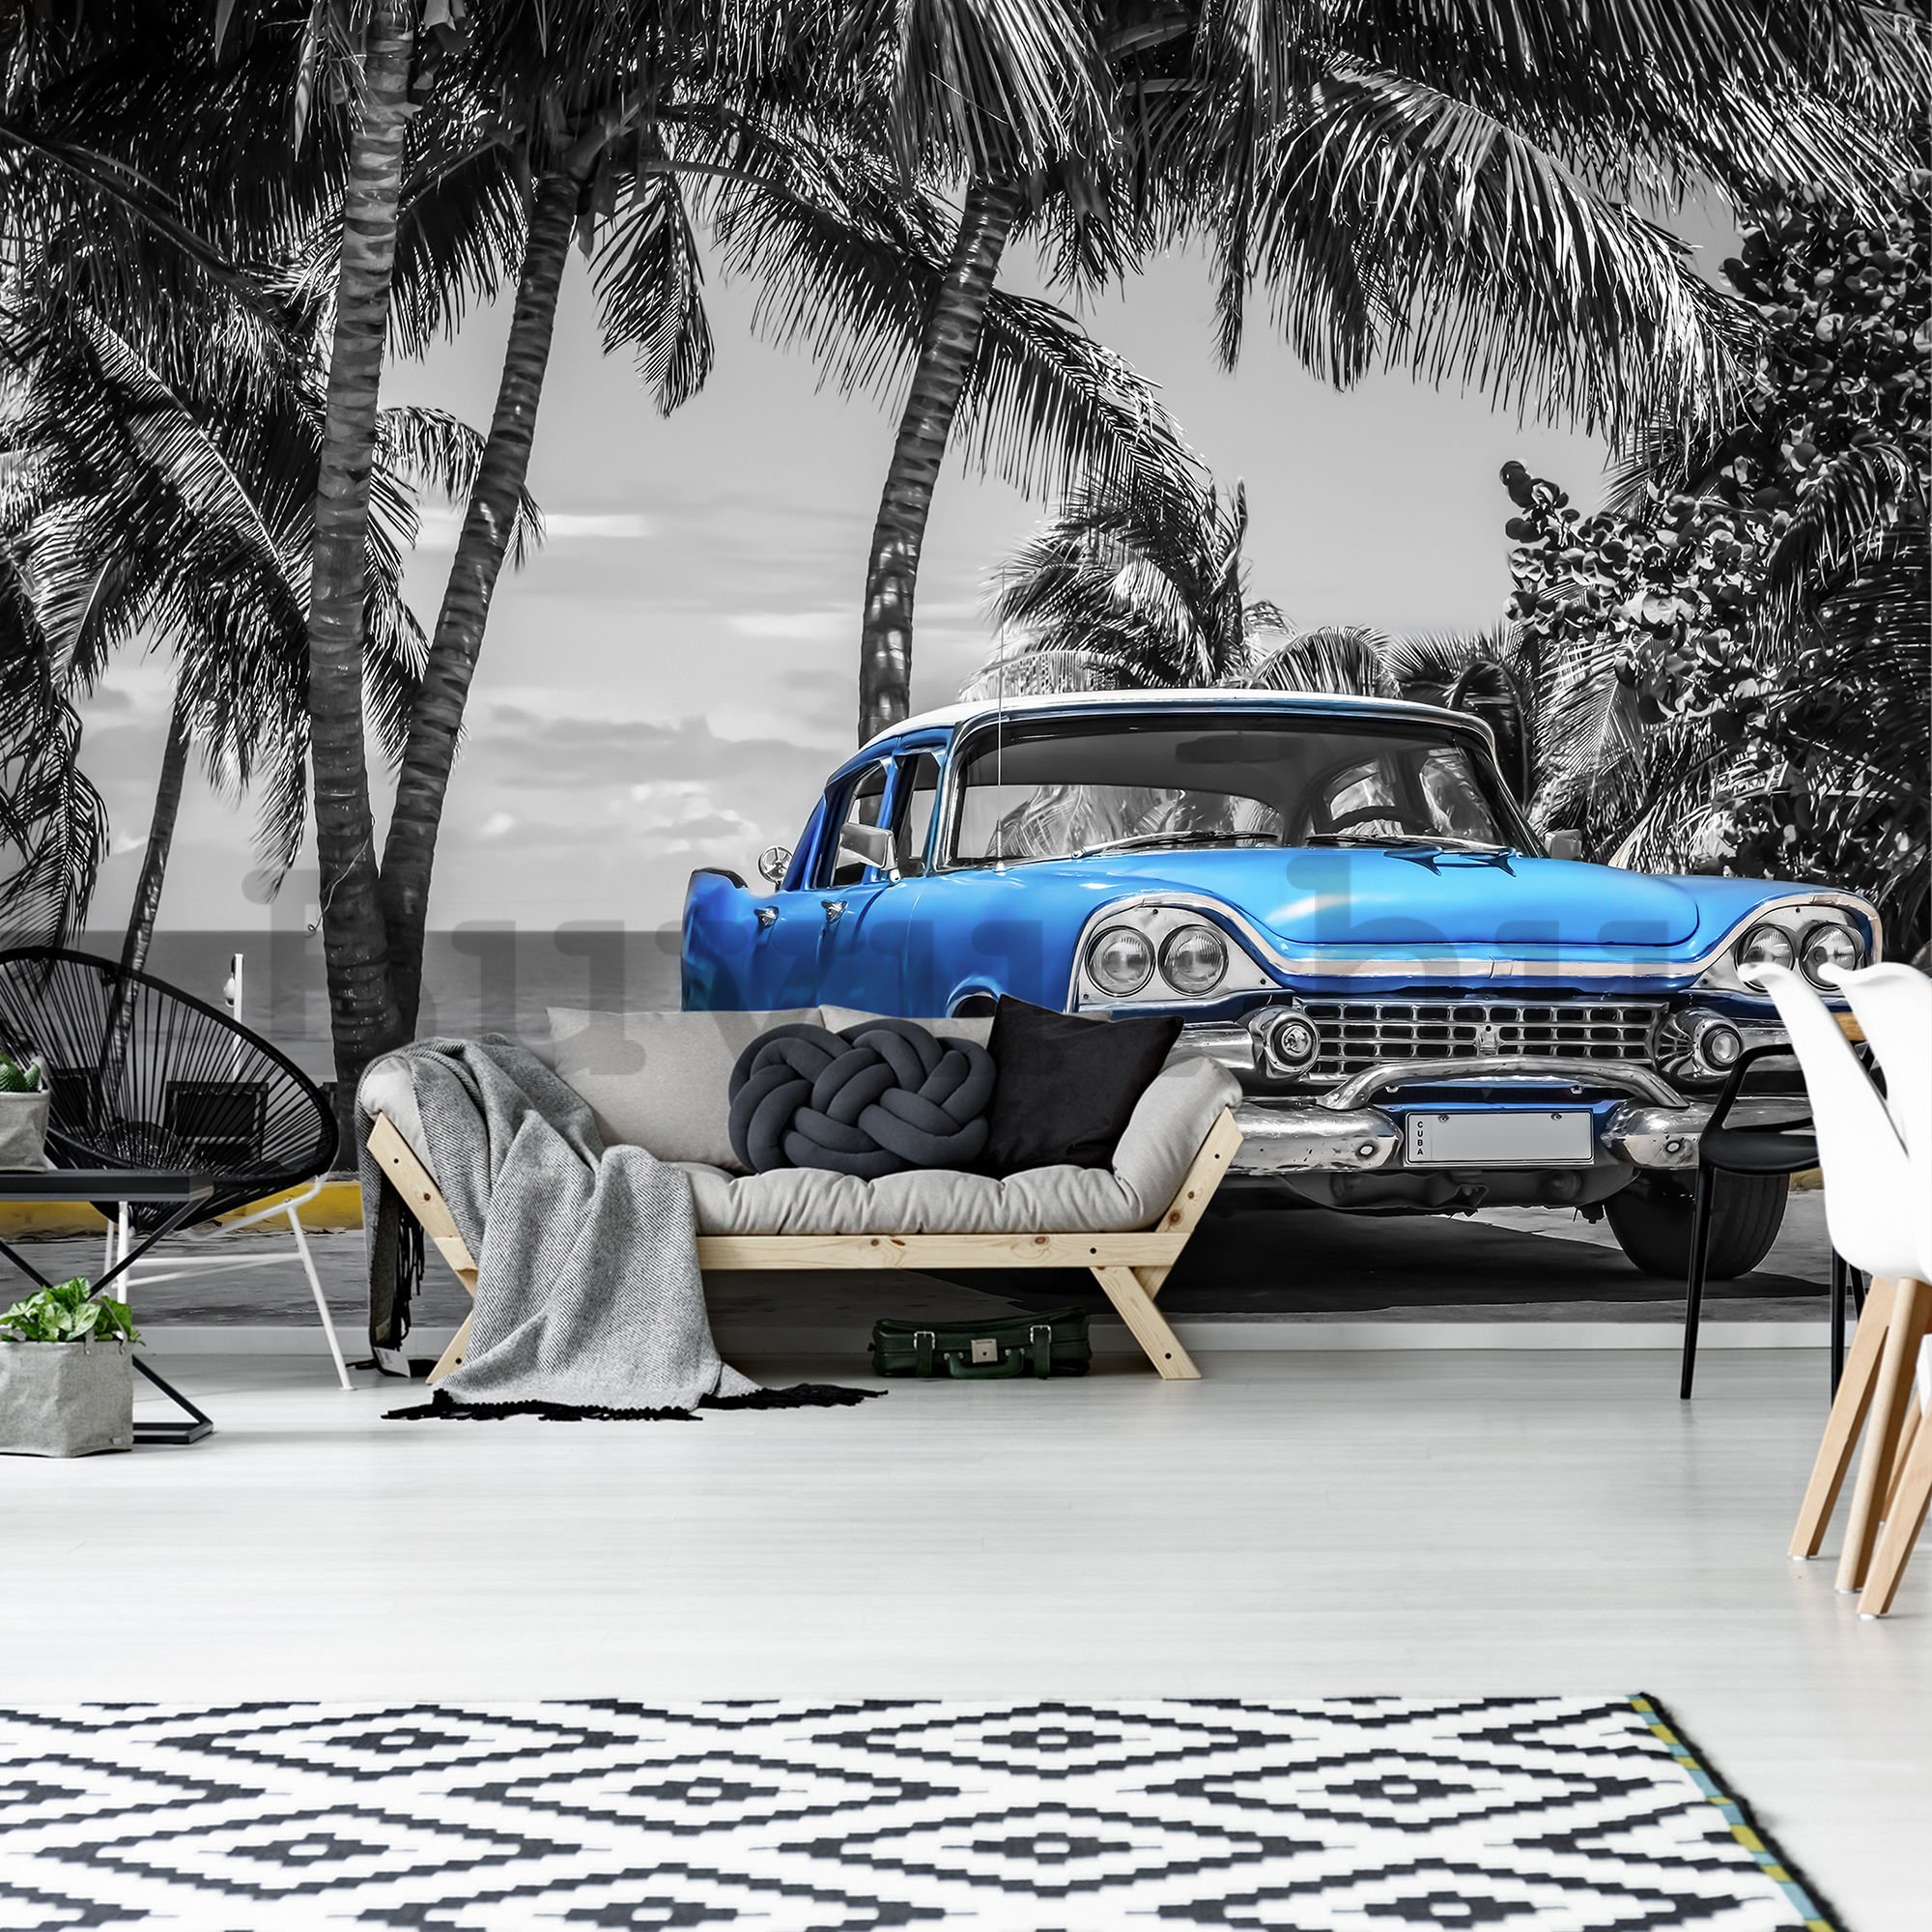 Vlies fotótapéta: Kuba kék autó a tenger mellett - 416x254 cm